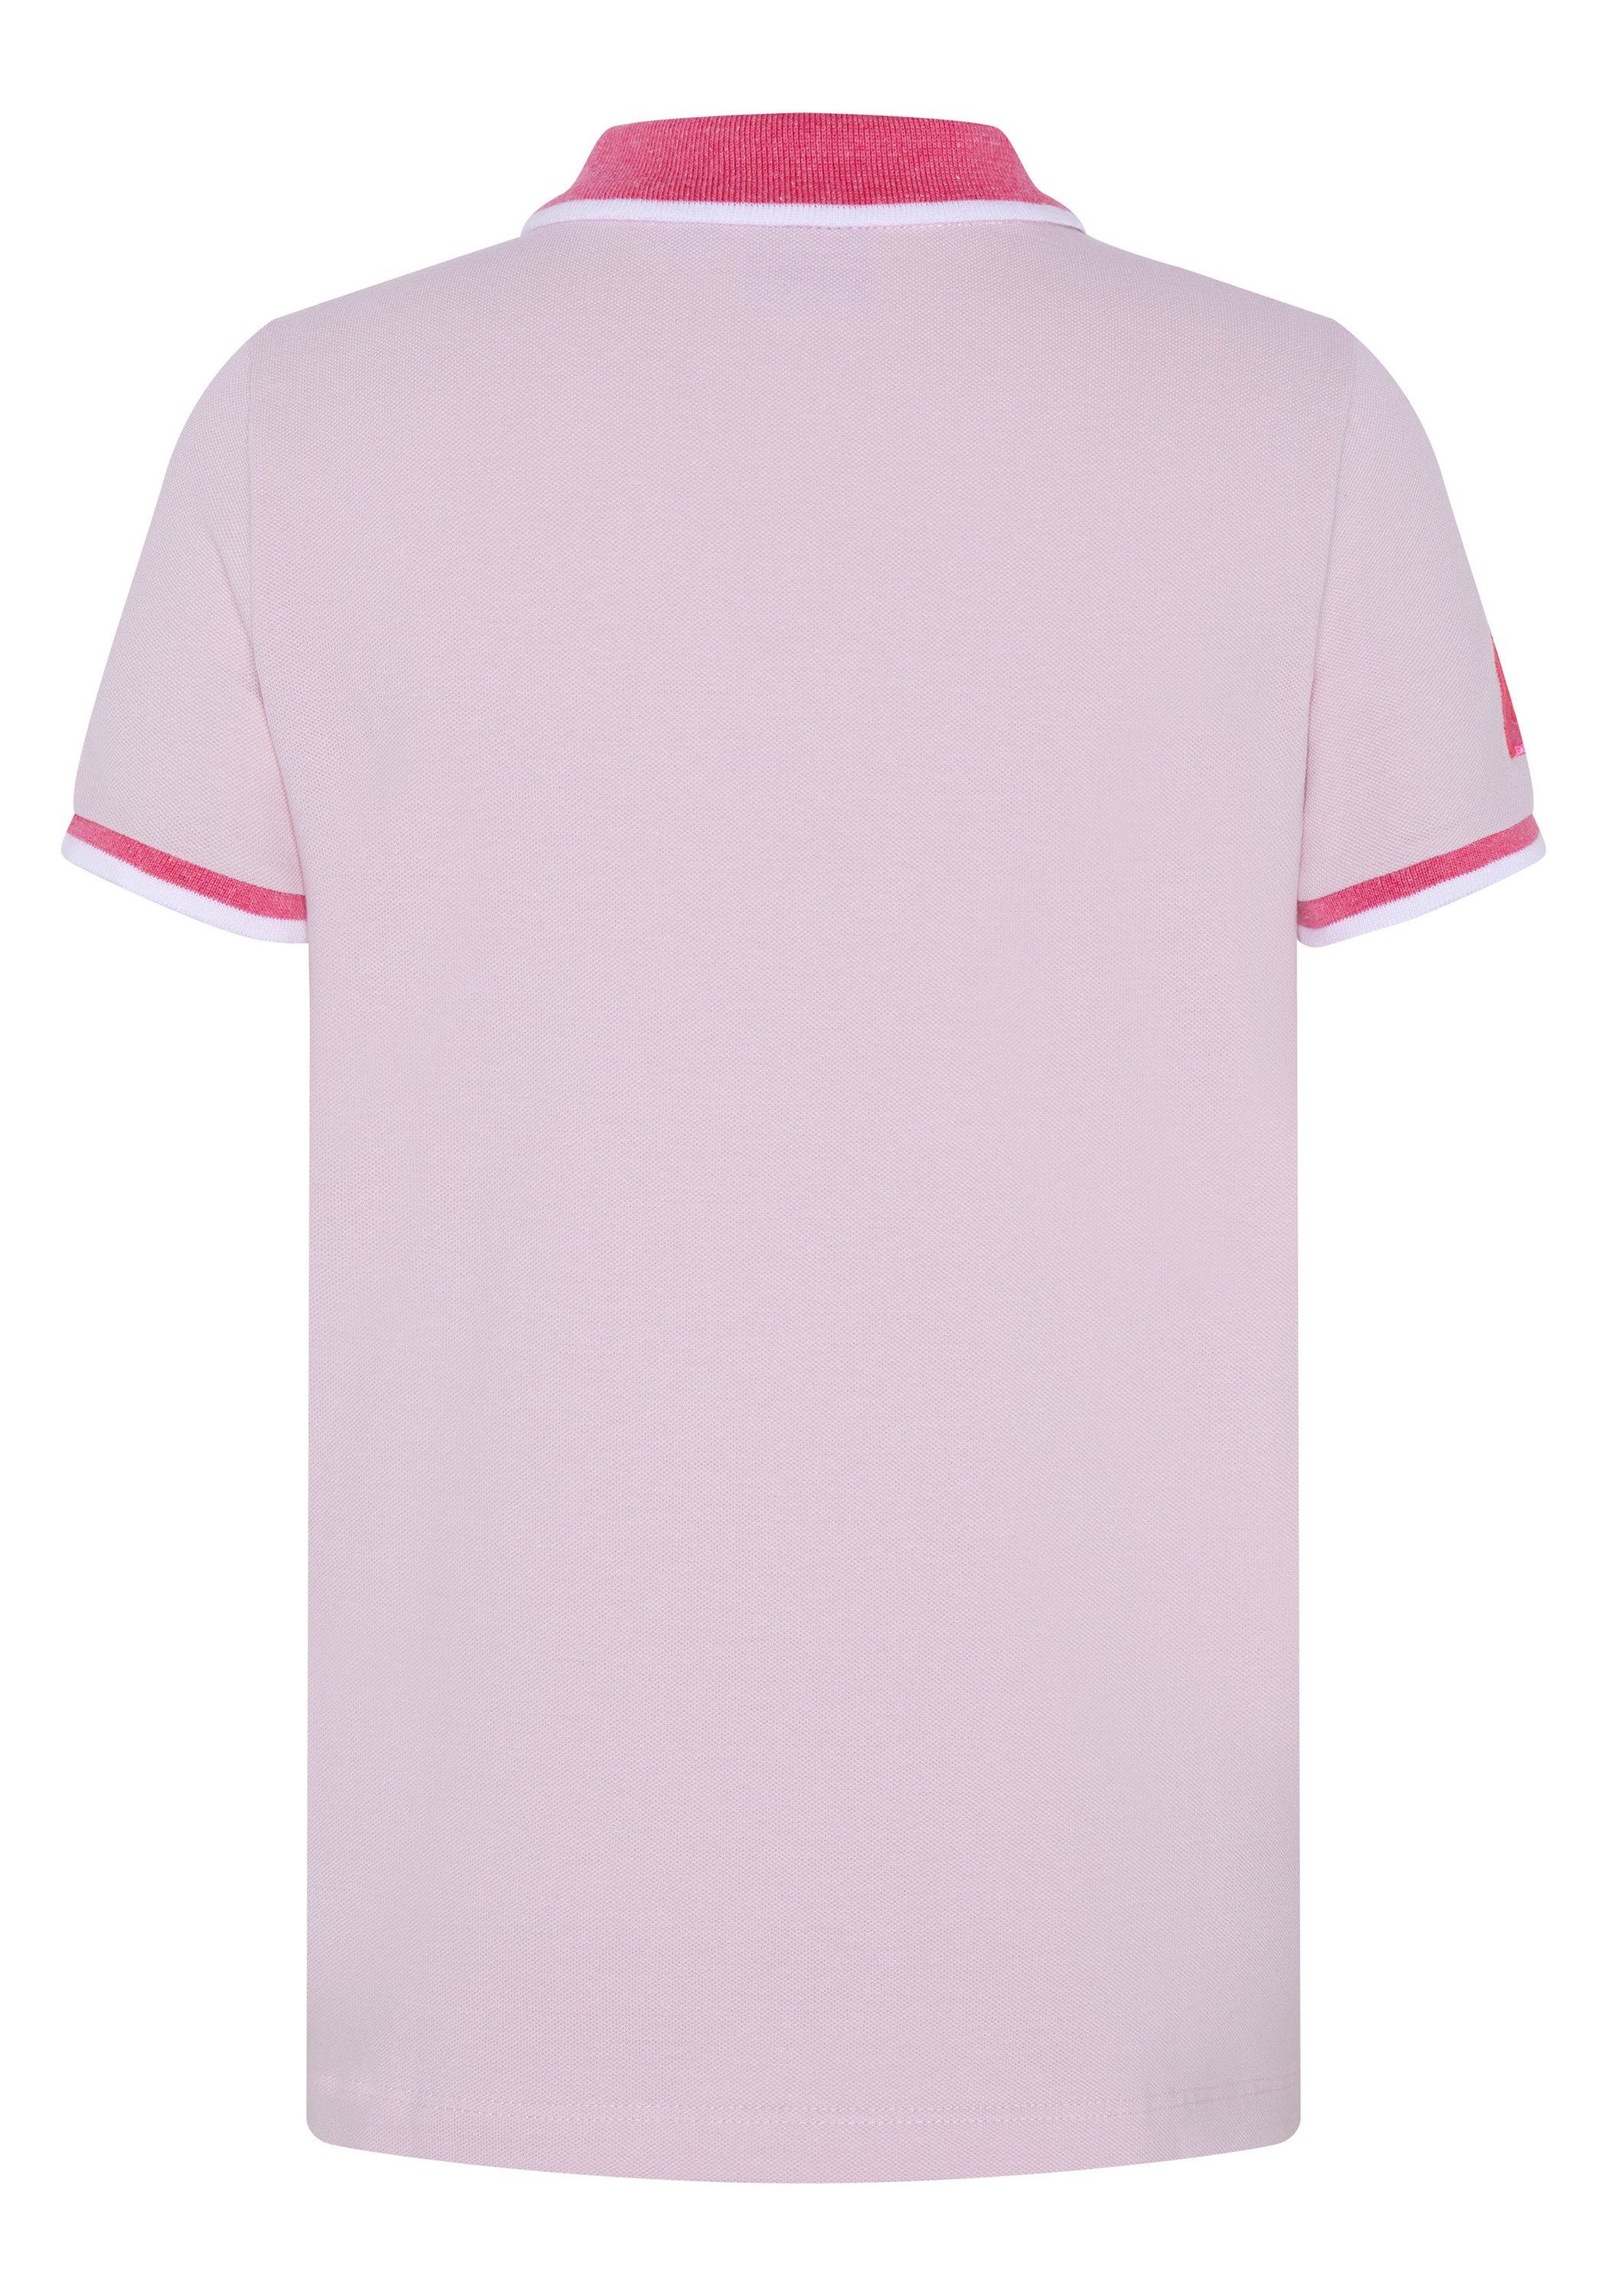 Kragen Sylt mit Polo Lady farblich abgesetztem Pink Poloshirt 13-2806